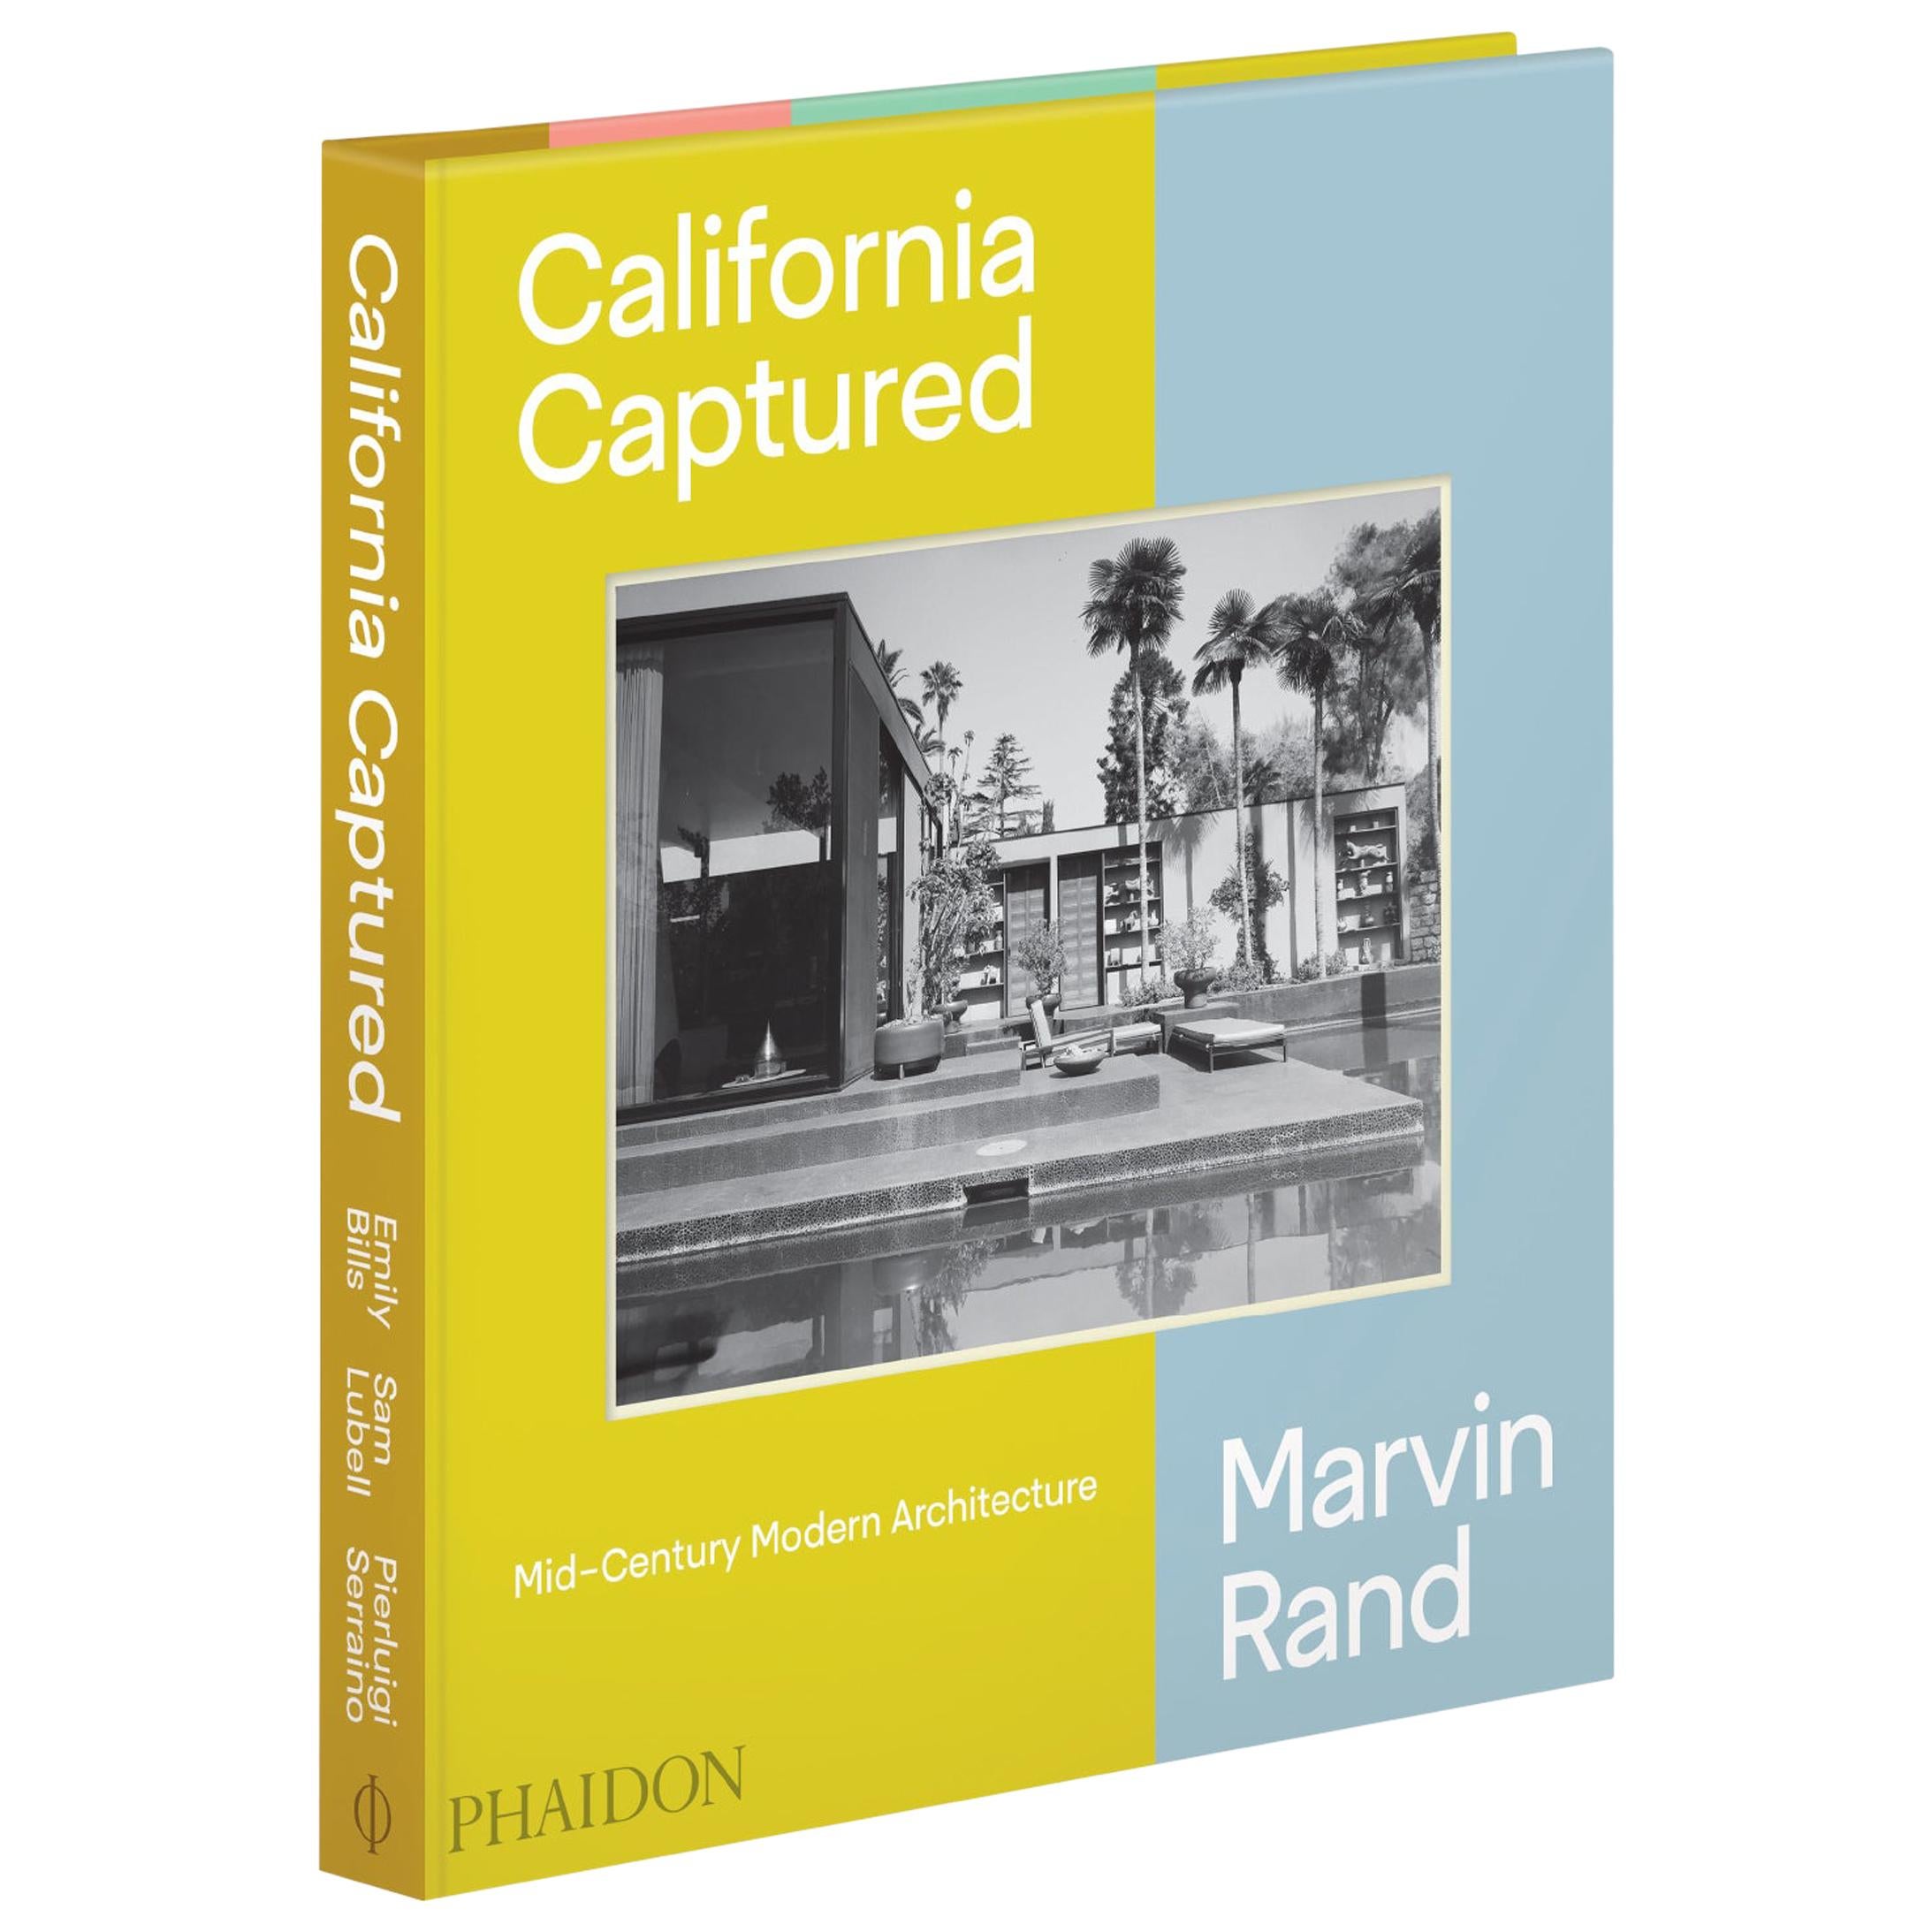 Marvin Rand - Architecture californienne capture de la modernité du milieu du siècle dernier